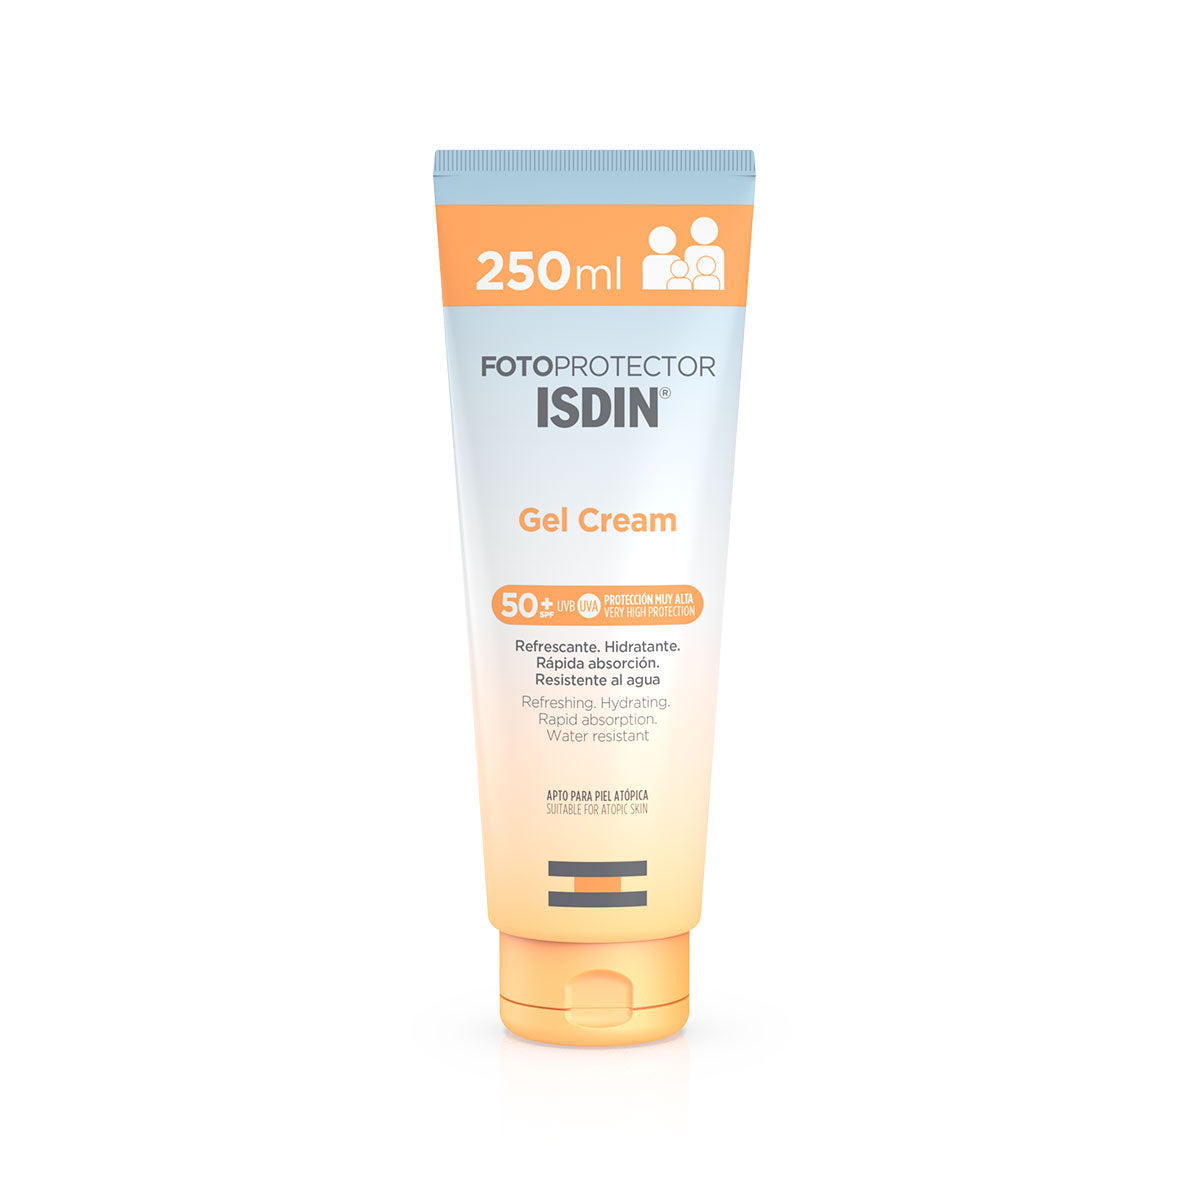 Fotoprotector ISDIN Gel Cream FPS 50+ 250ml